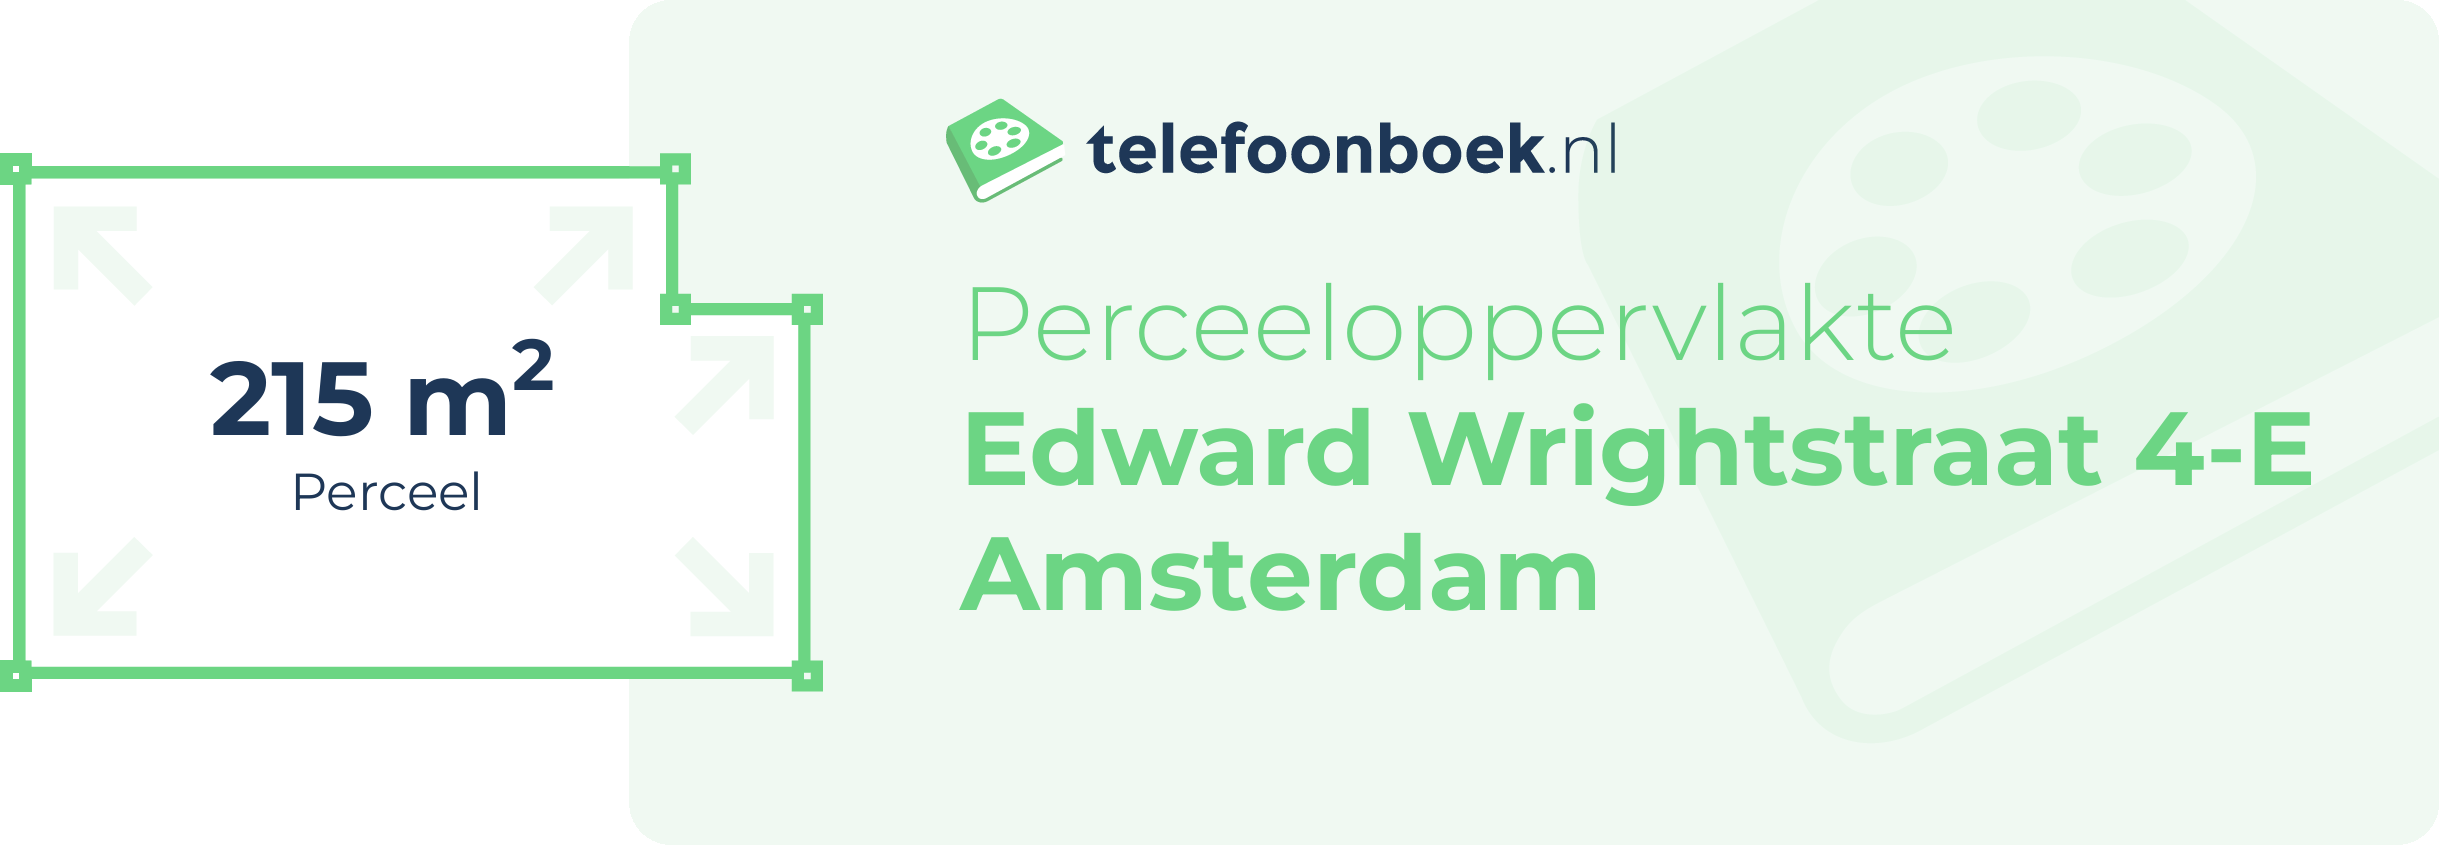 Perceeloppervlakte Edward Wrightstraat 4-E Amsterdam